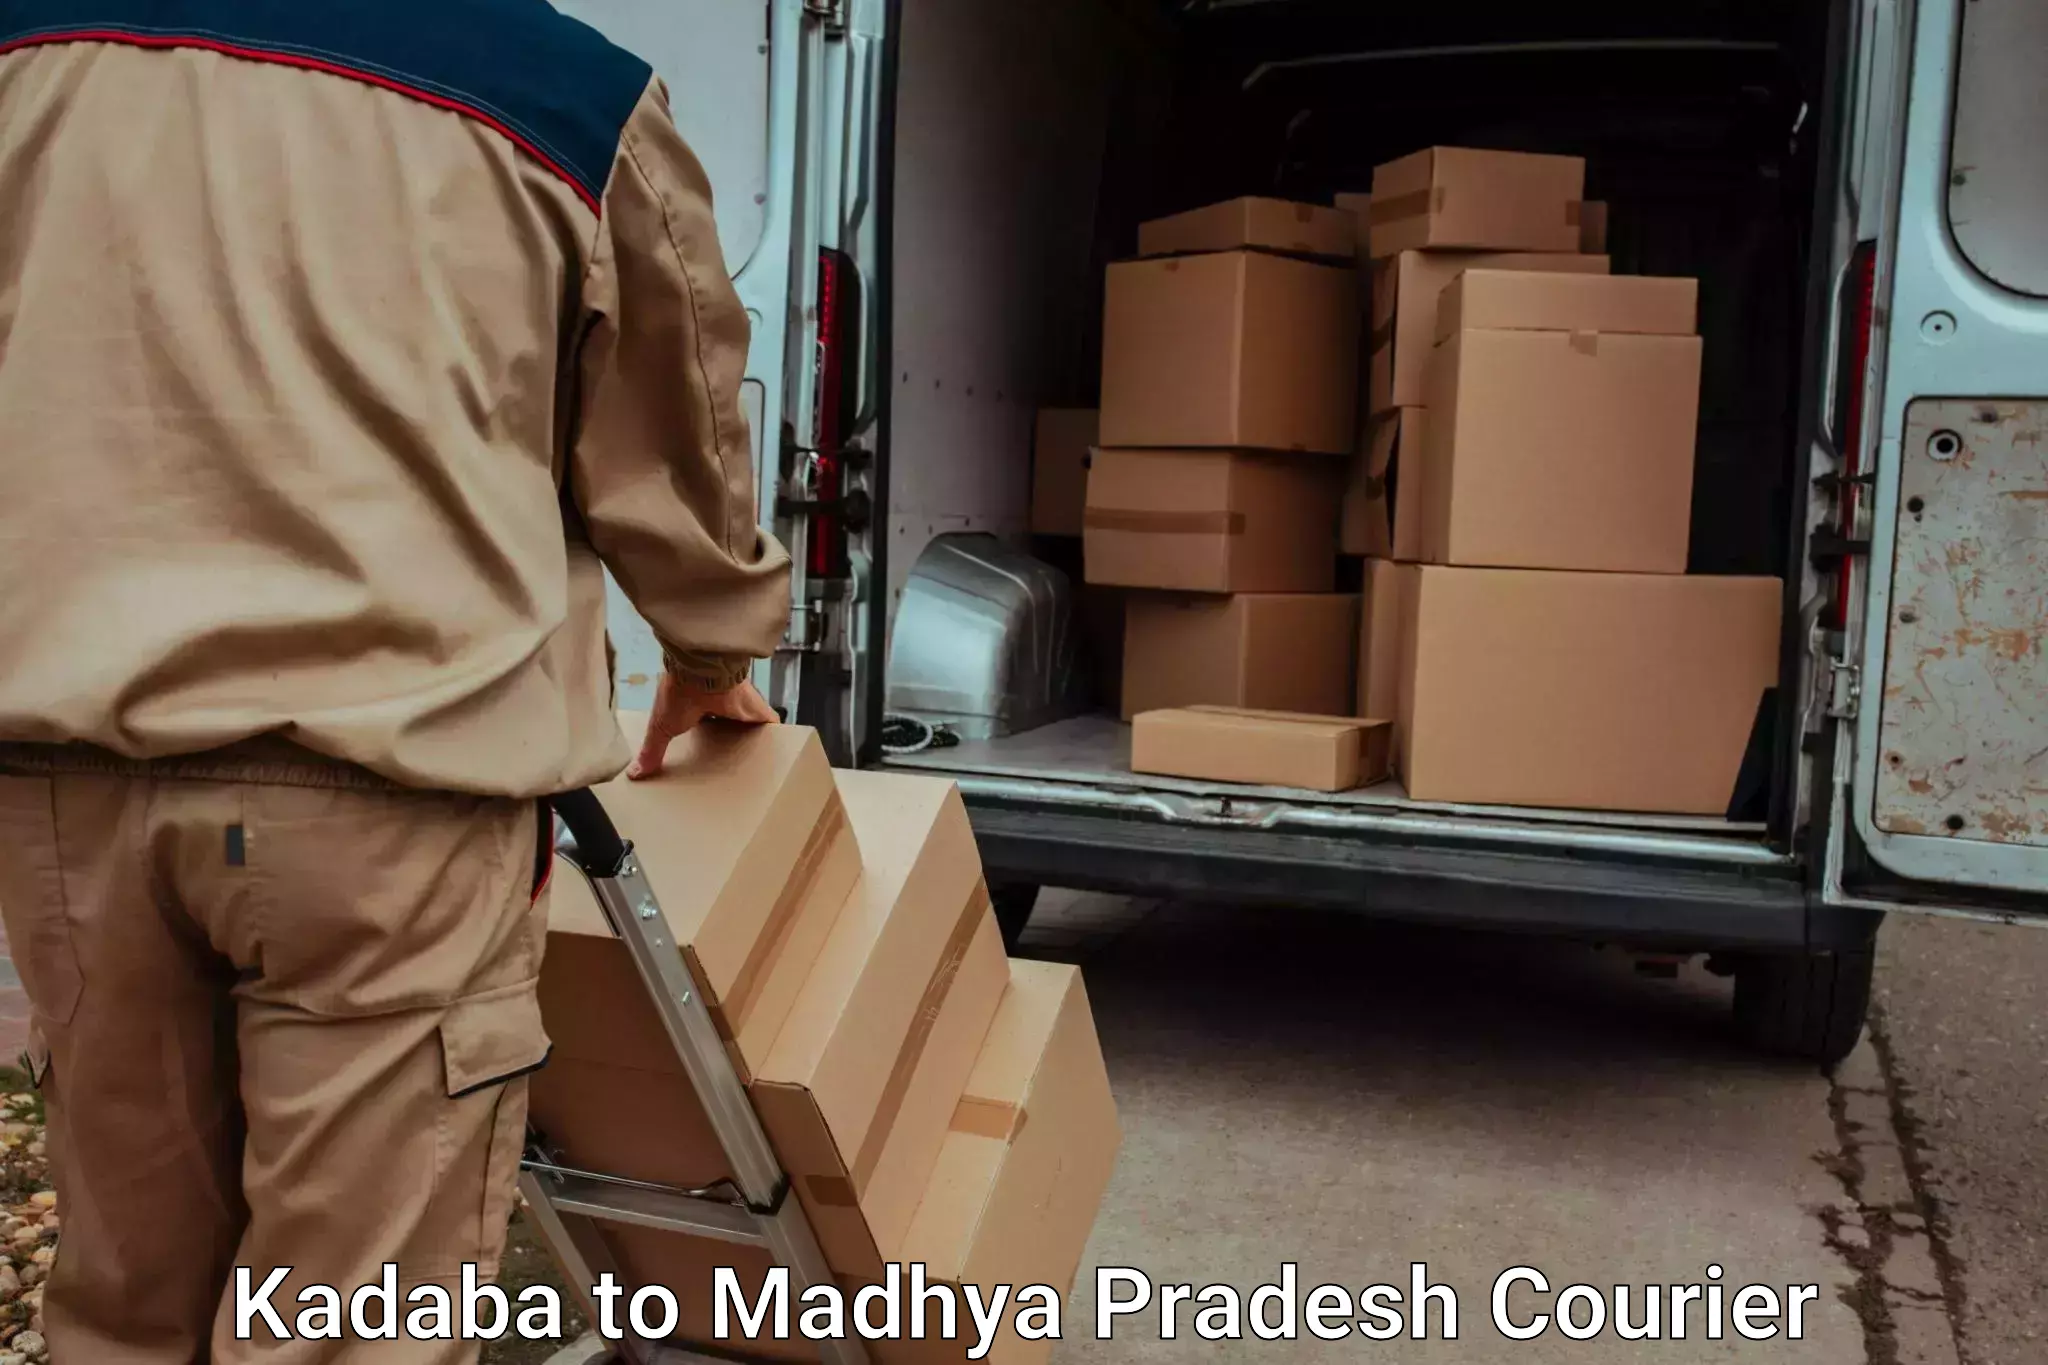 Luggage transport guidelines Kadaba to Ganj Basoda